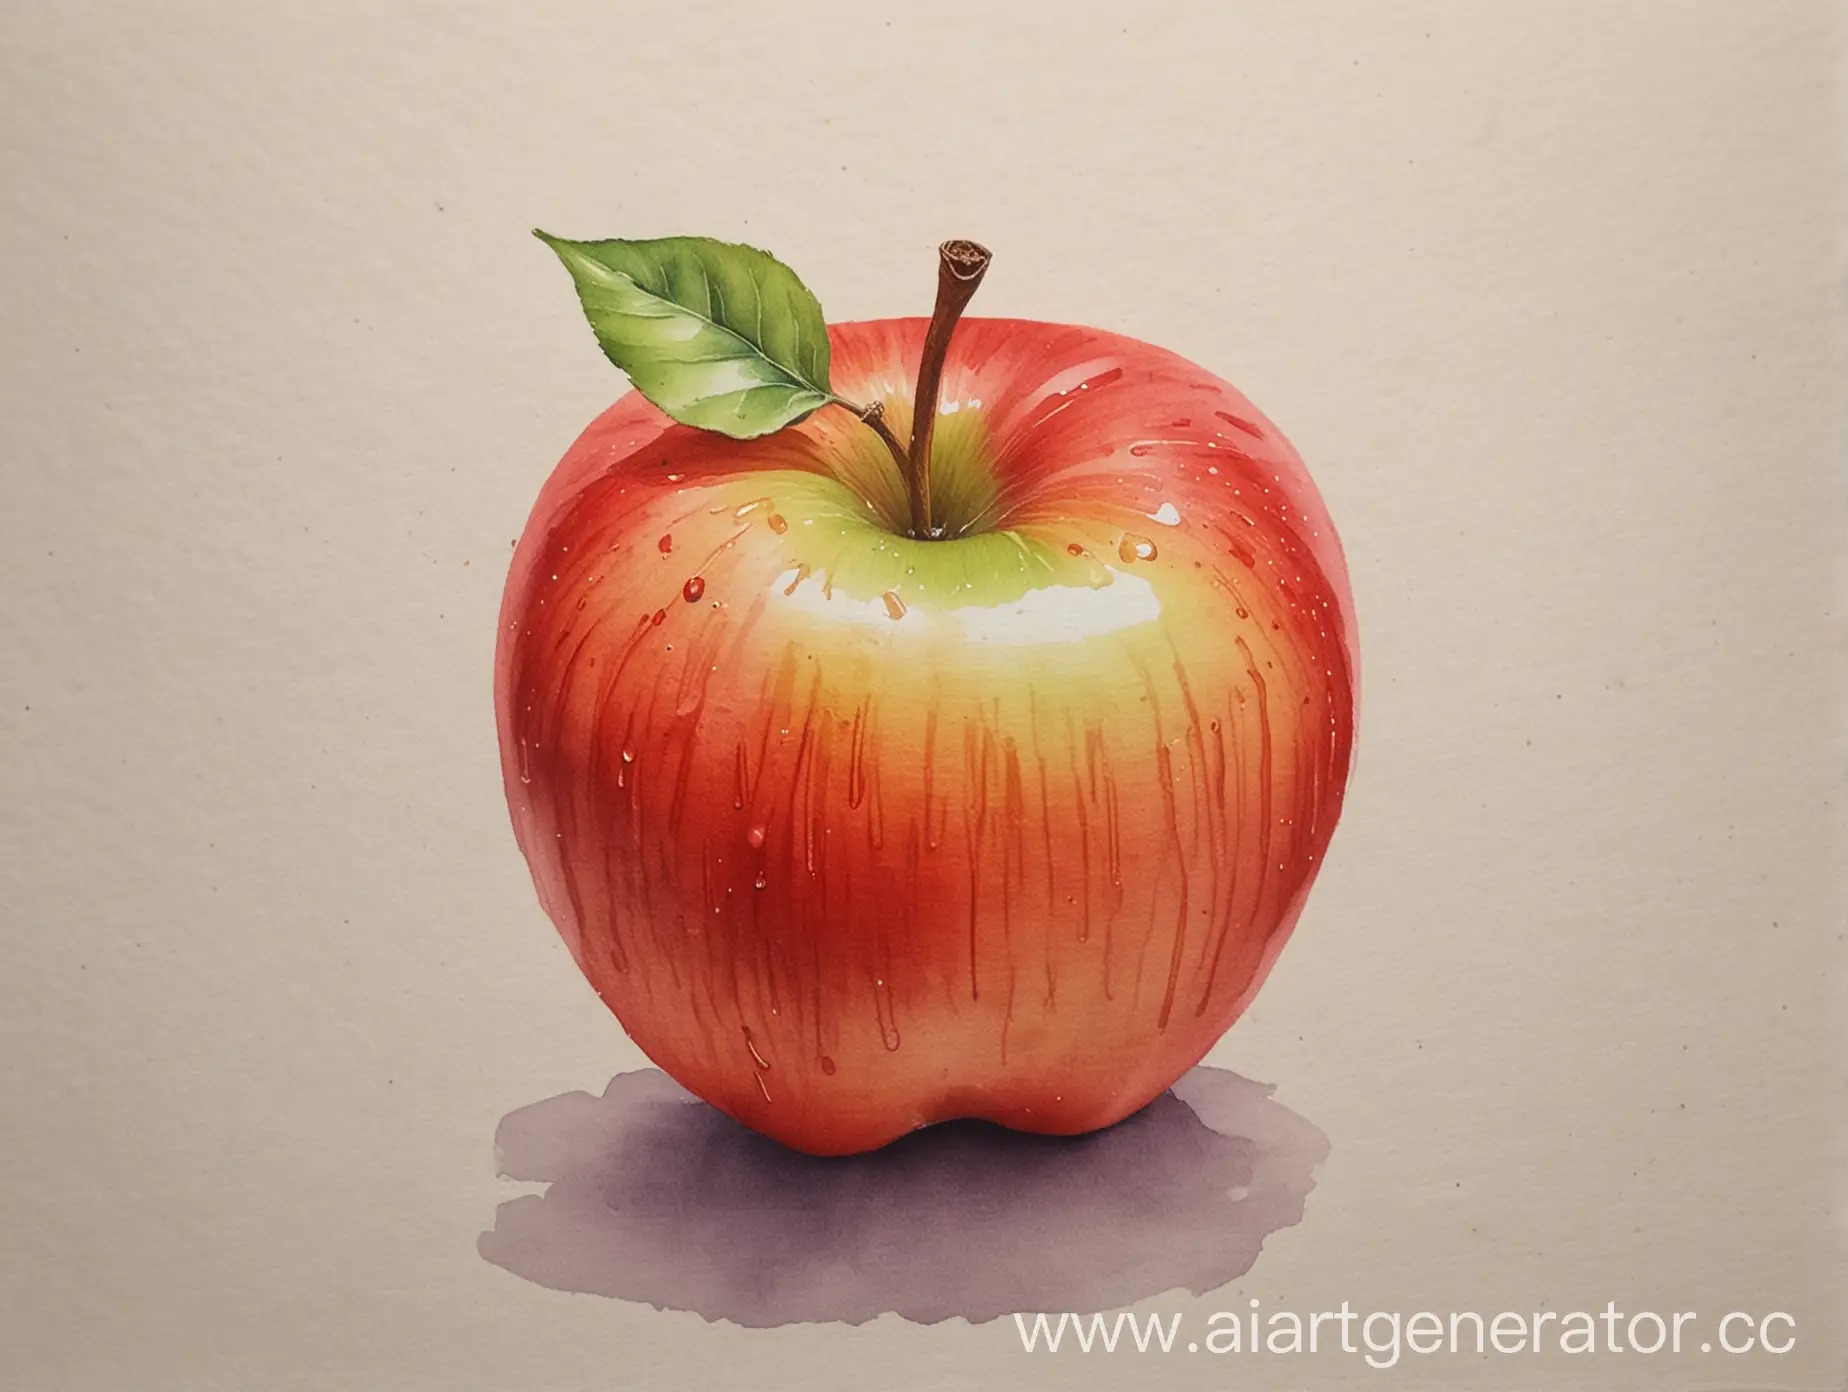 Академический рисунок, красками акварелью, рисуем яблоко в теплом колорите и холодном, соблюдая тональность. Больше пятен, будто кто-то рисовал действительно, рядом кисти.